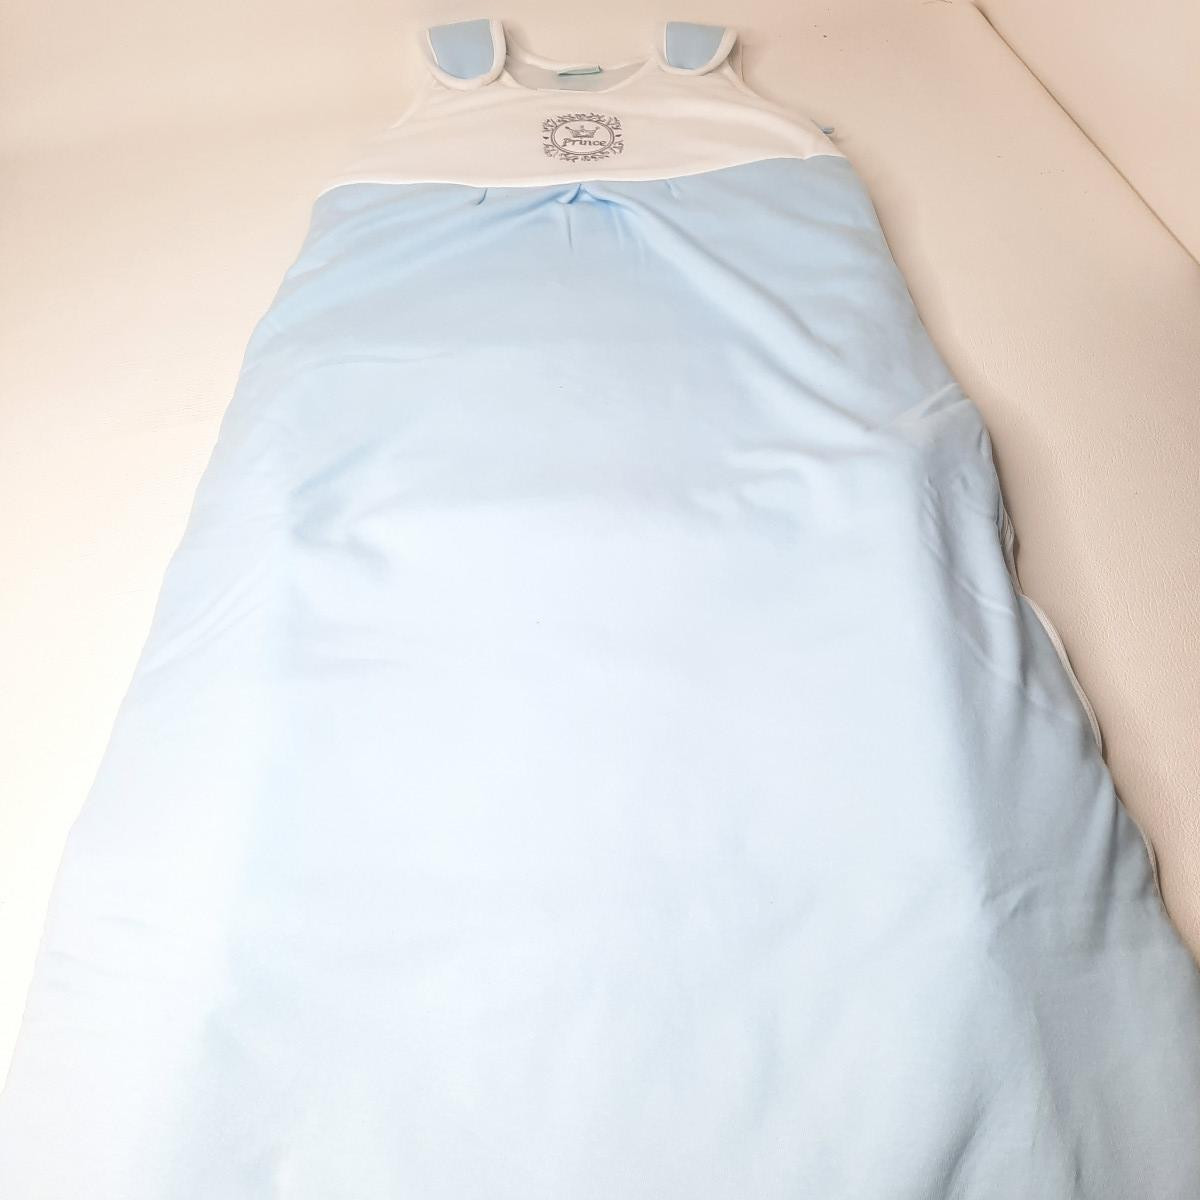 Sac de couchage doublé bleu - Prince 110cm - 037-110-011 - photo 6